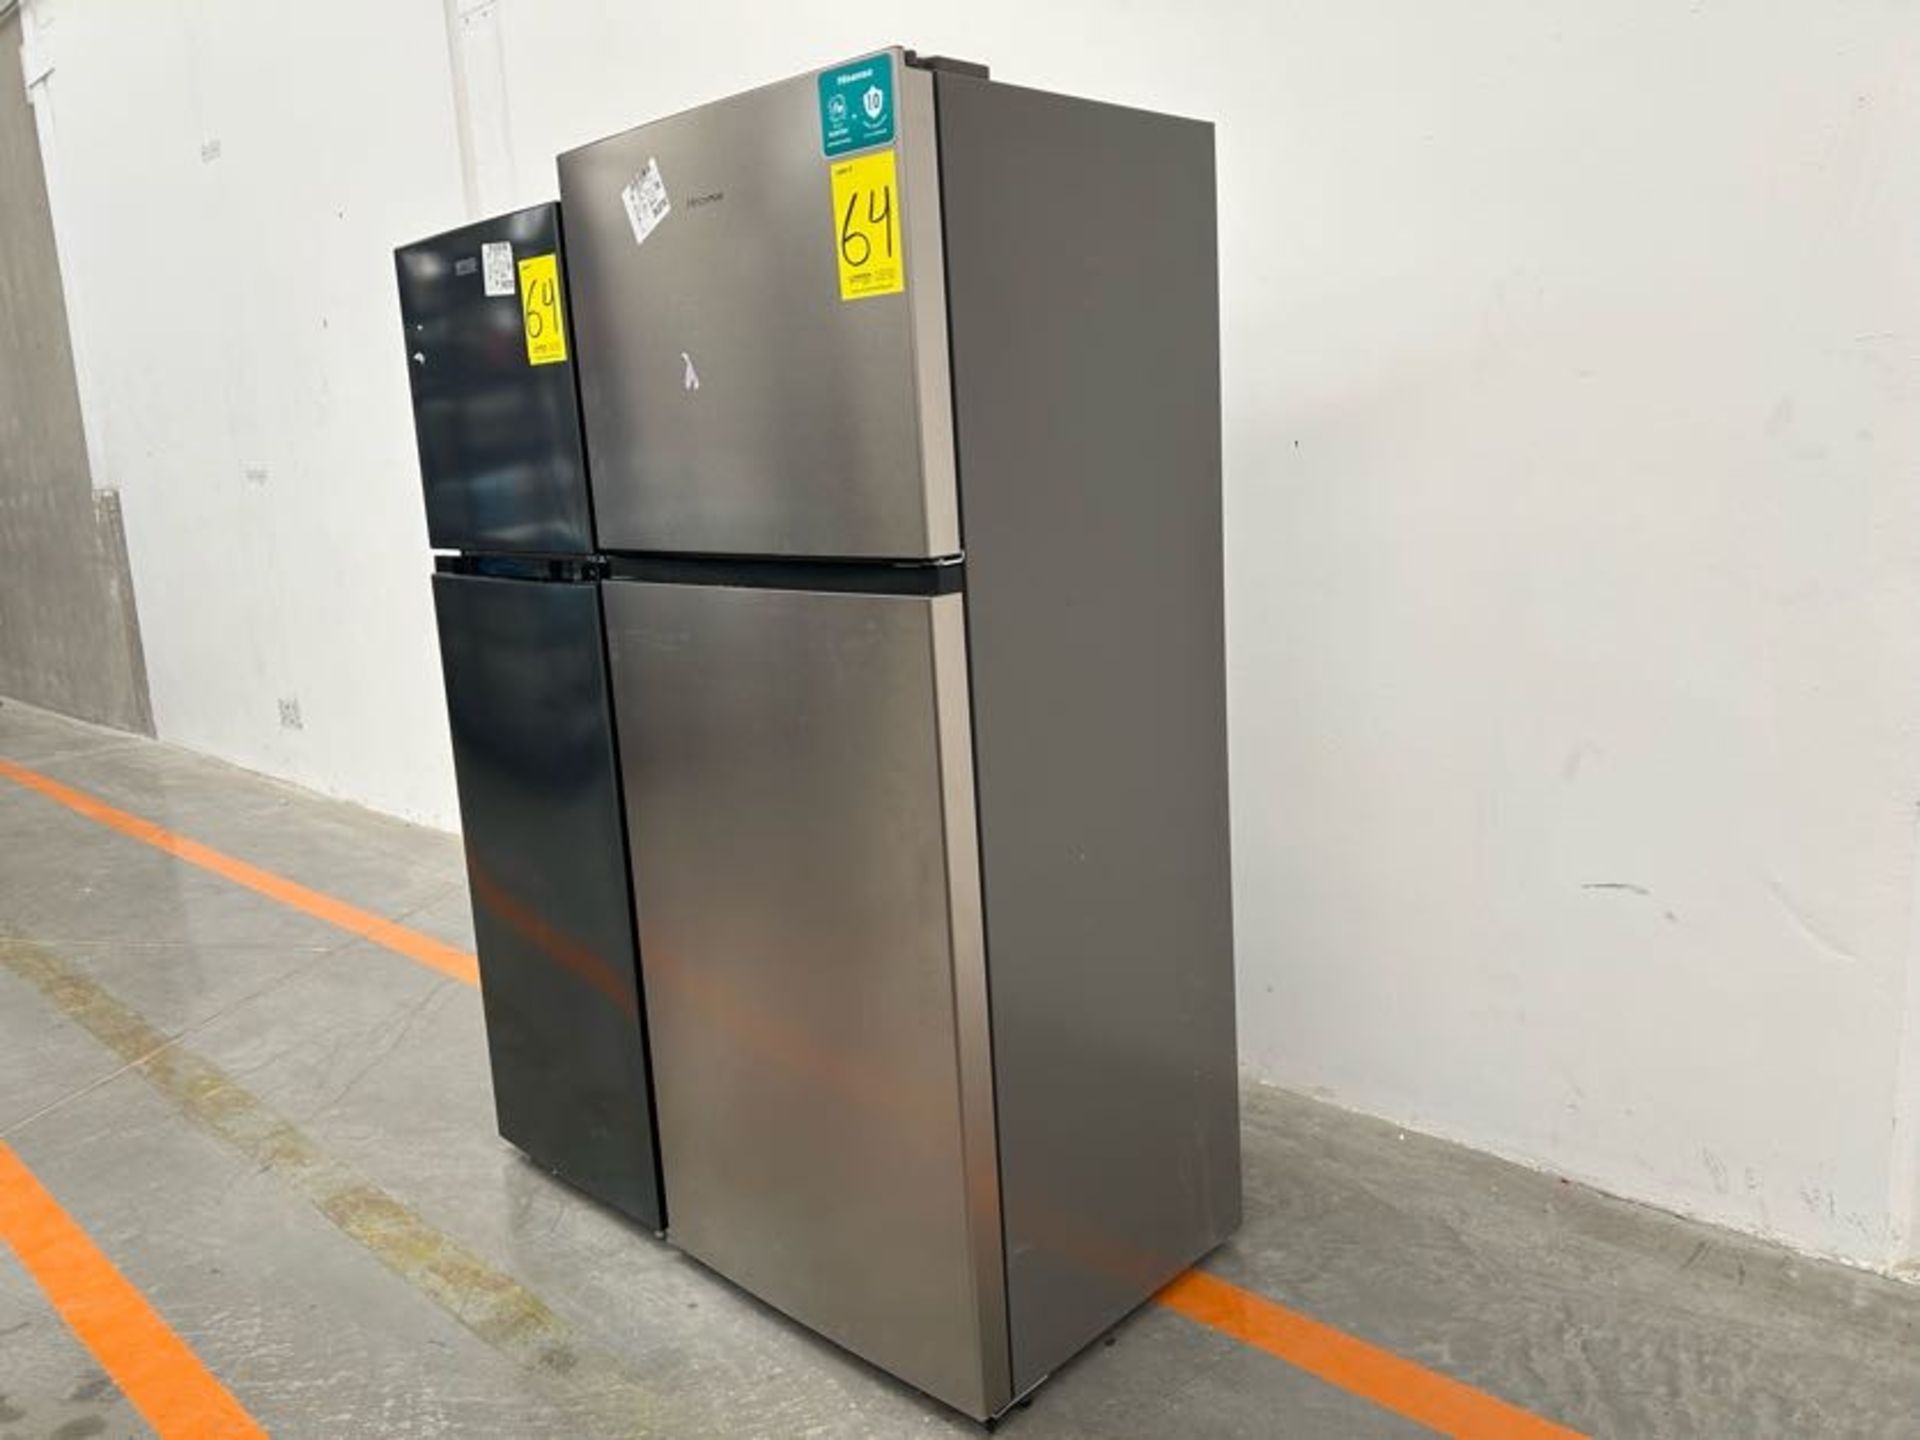 Lote de 2 Refrigeradores contiene: 1 Refrigerador Marca HISENSE, Modelo RT14N6FDX, Serie 70404, Col - Image 3 of 8